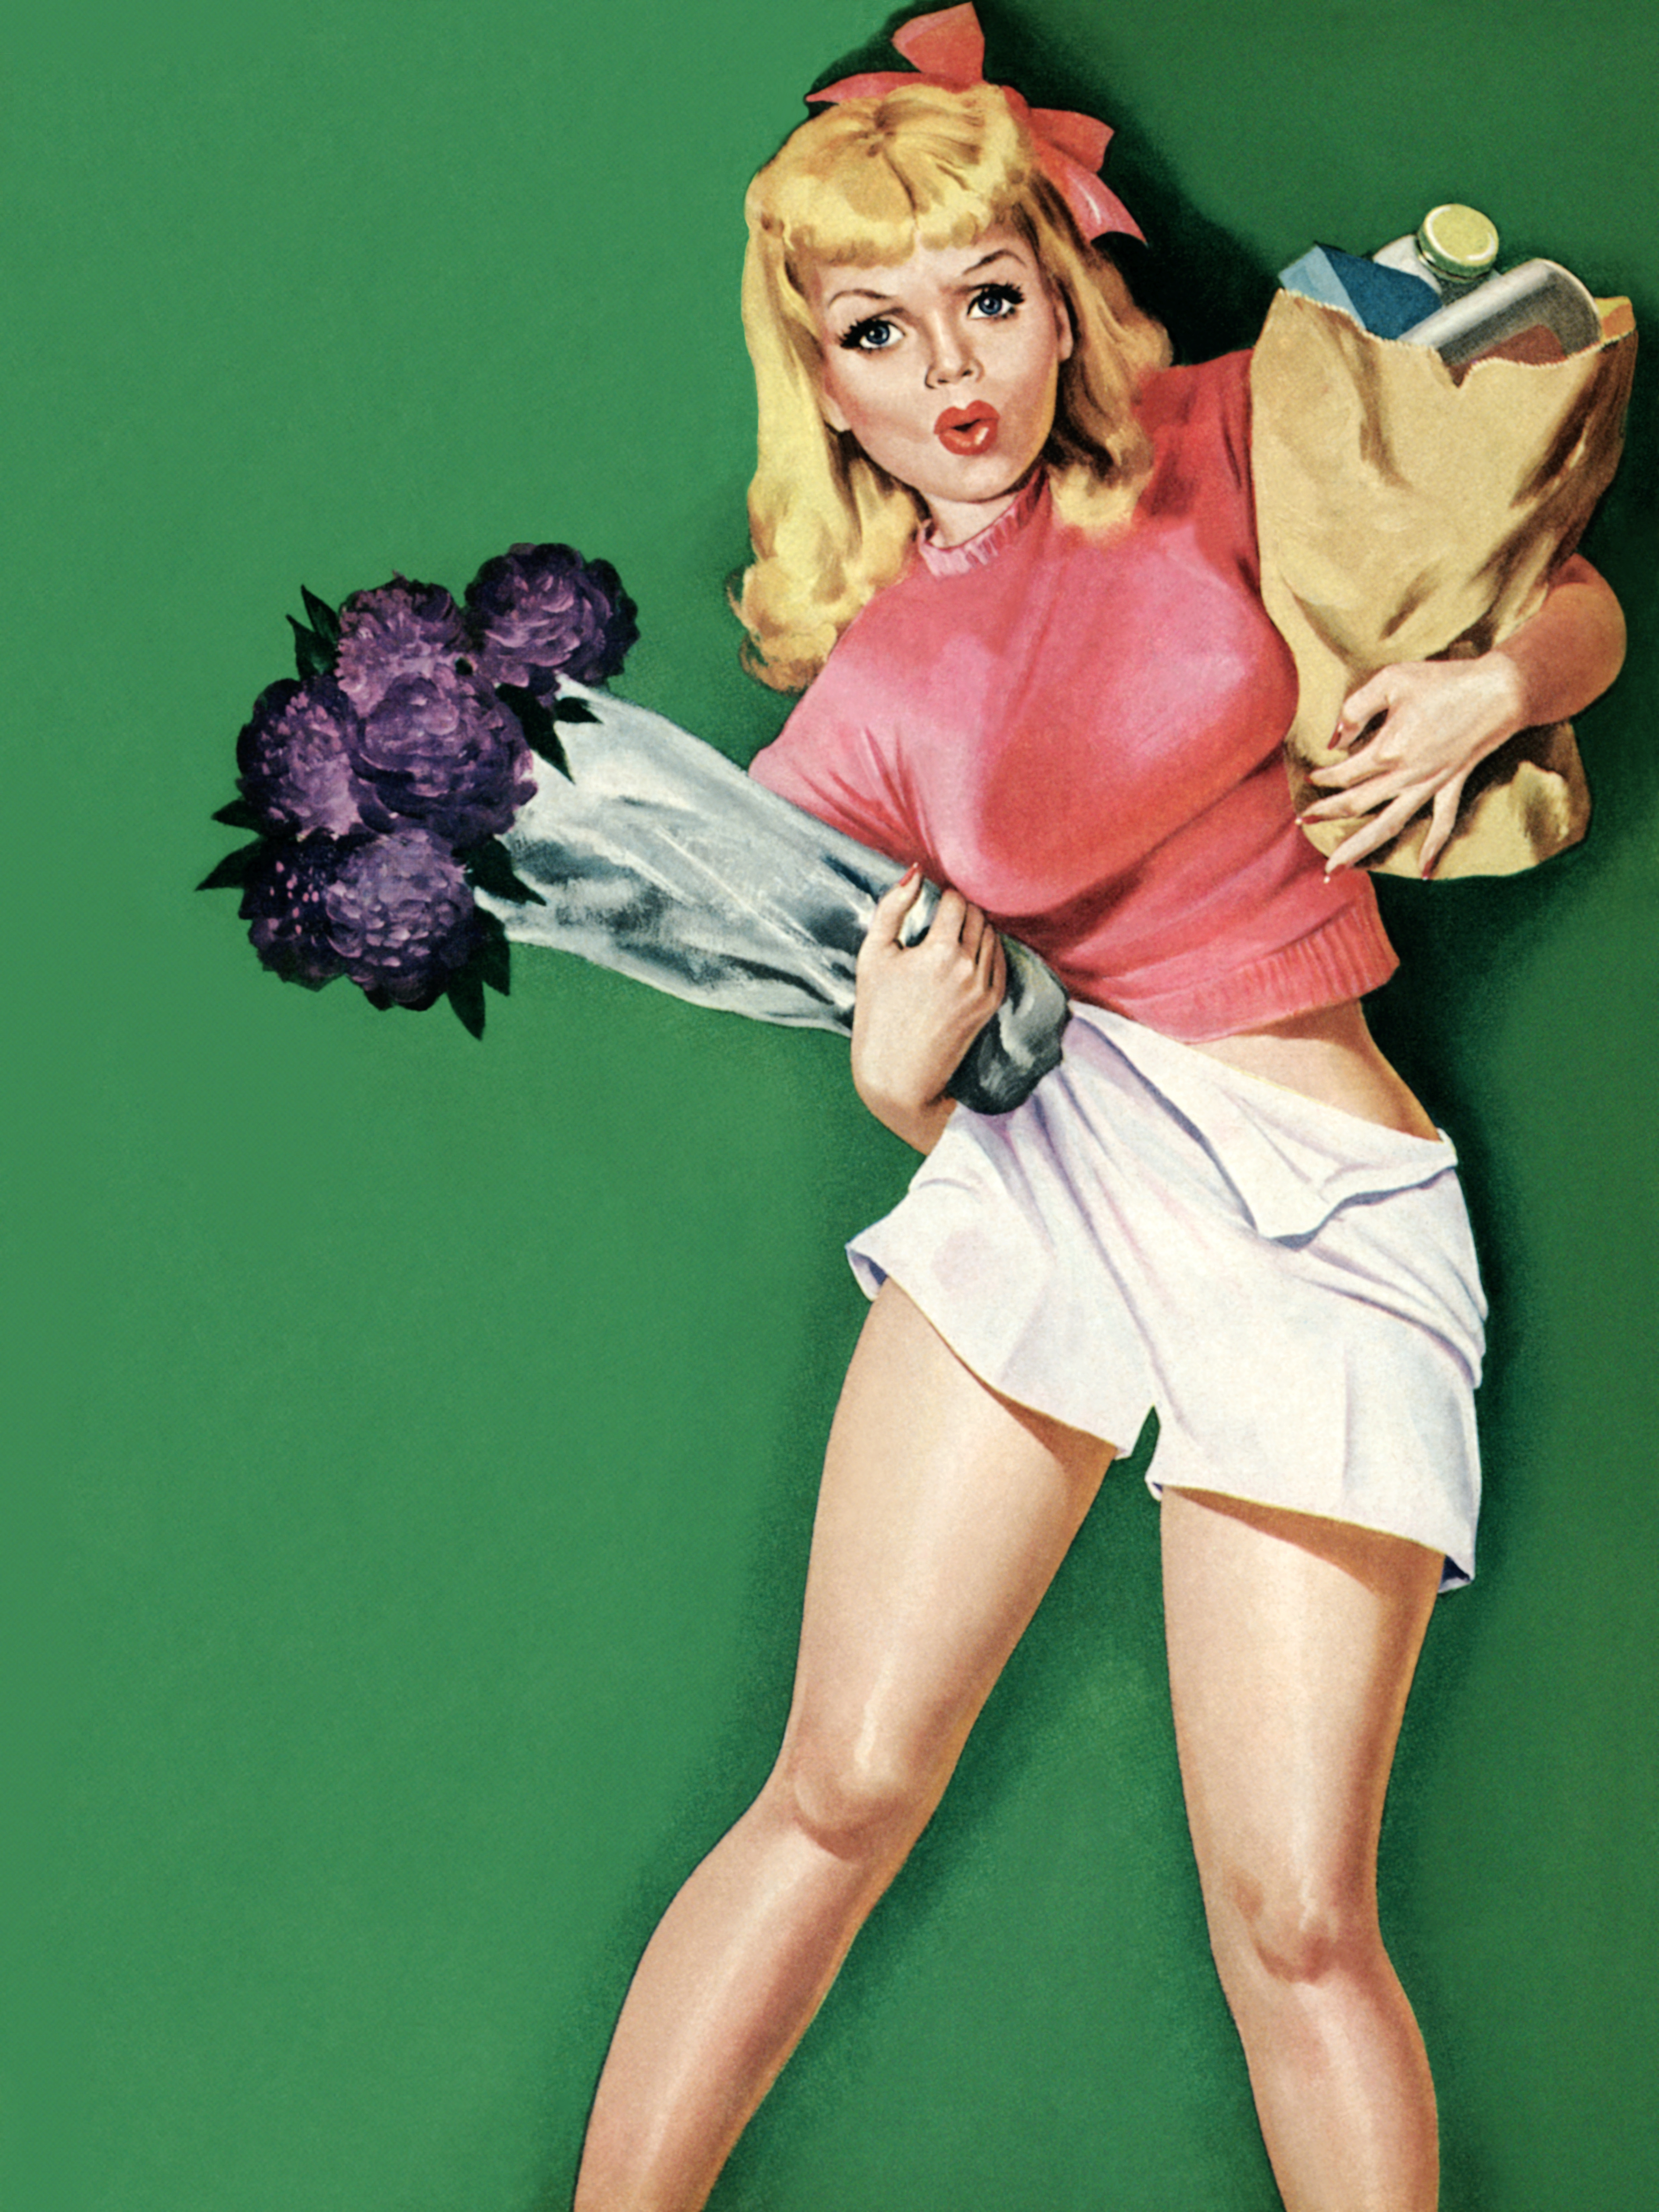 Пин ап pinmain top. Постеры в стиле 50-х годов. Девушка с плакатом. Пин ап девушки. Американские плакаты с девушками.